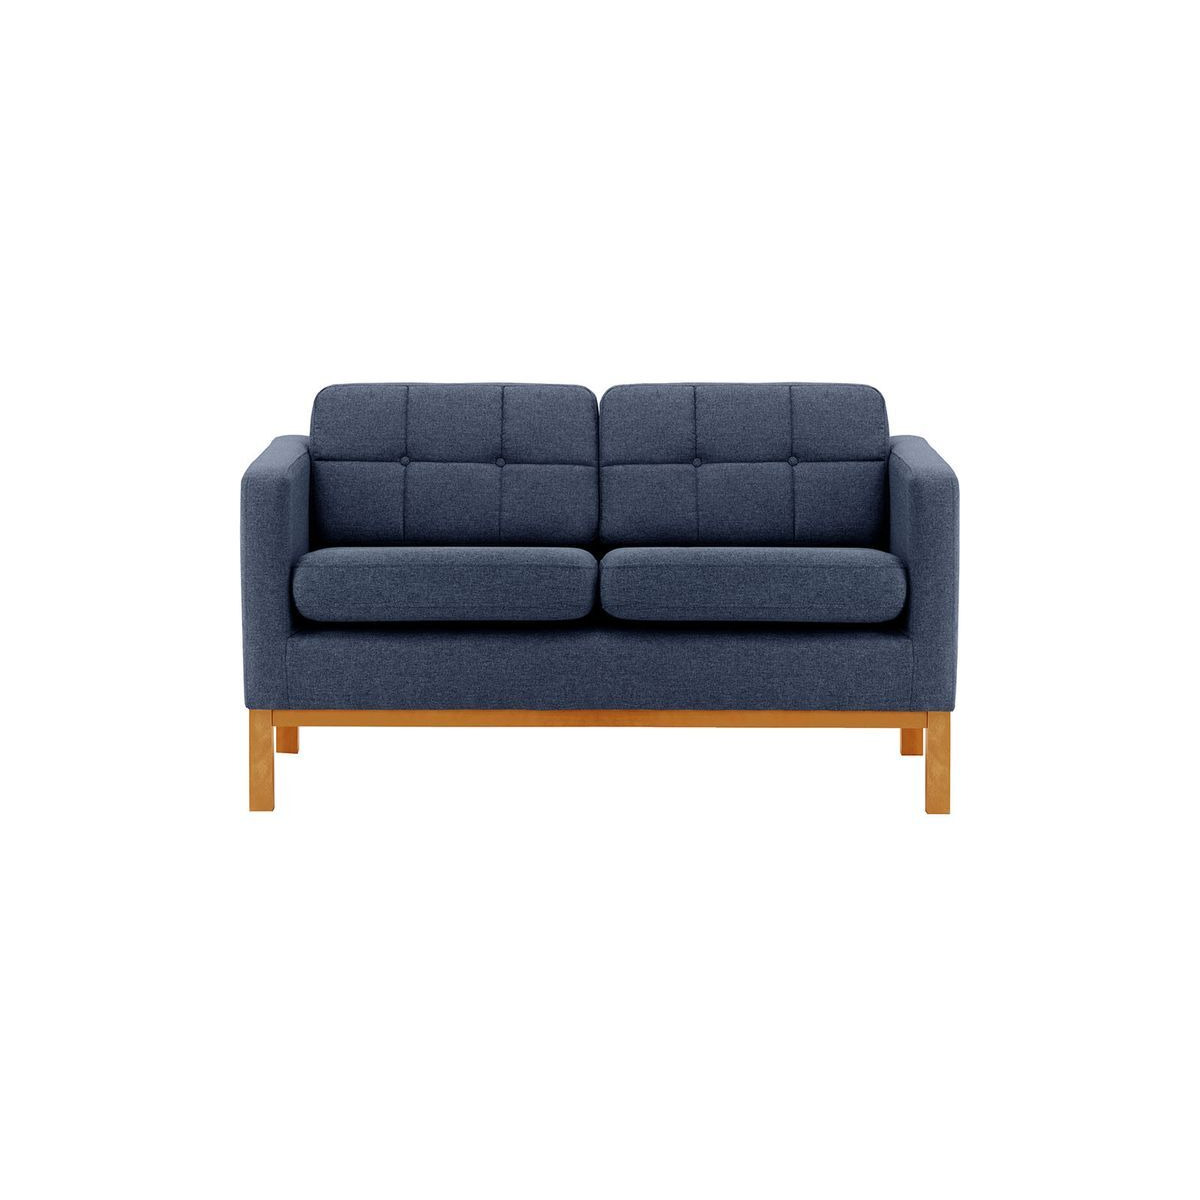 Normann 2 Seater Sofa, navy blue, Leg colour: aveo - image 1